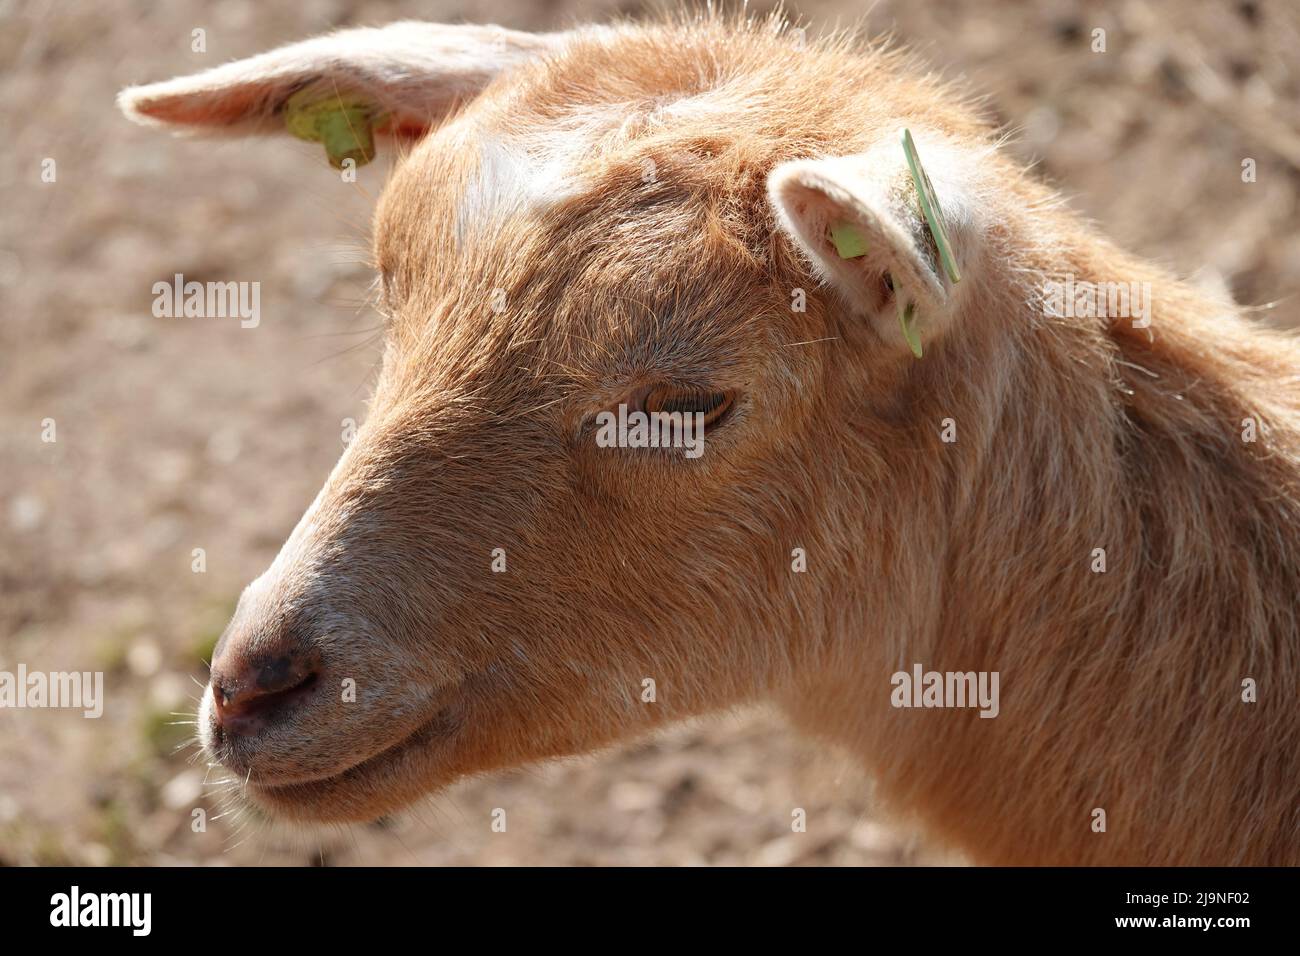 Portrait d'une chèvre de Dwarf d'Afrique de l'Ouest dans un zoo pour enfants. Il est marron clair et possède des marqueurs auditifs Banque D'Images